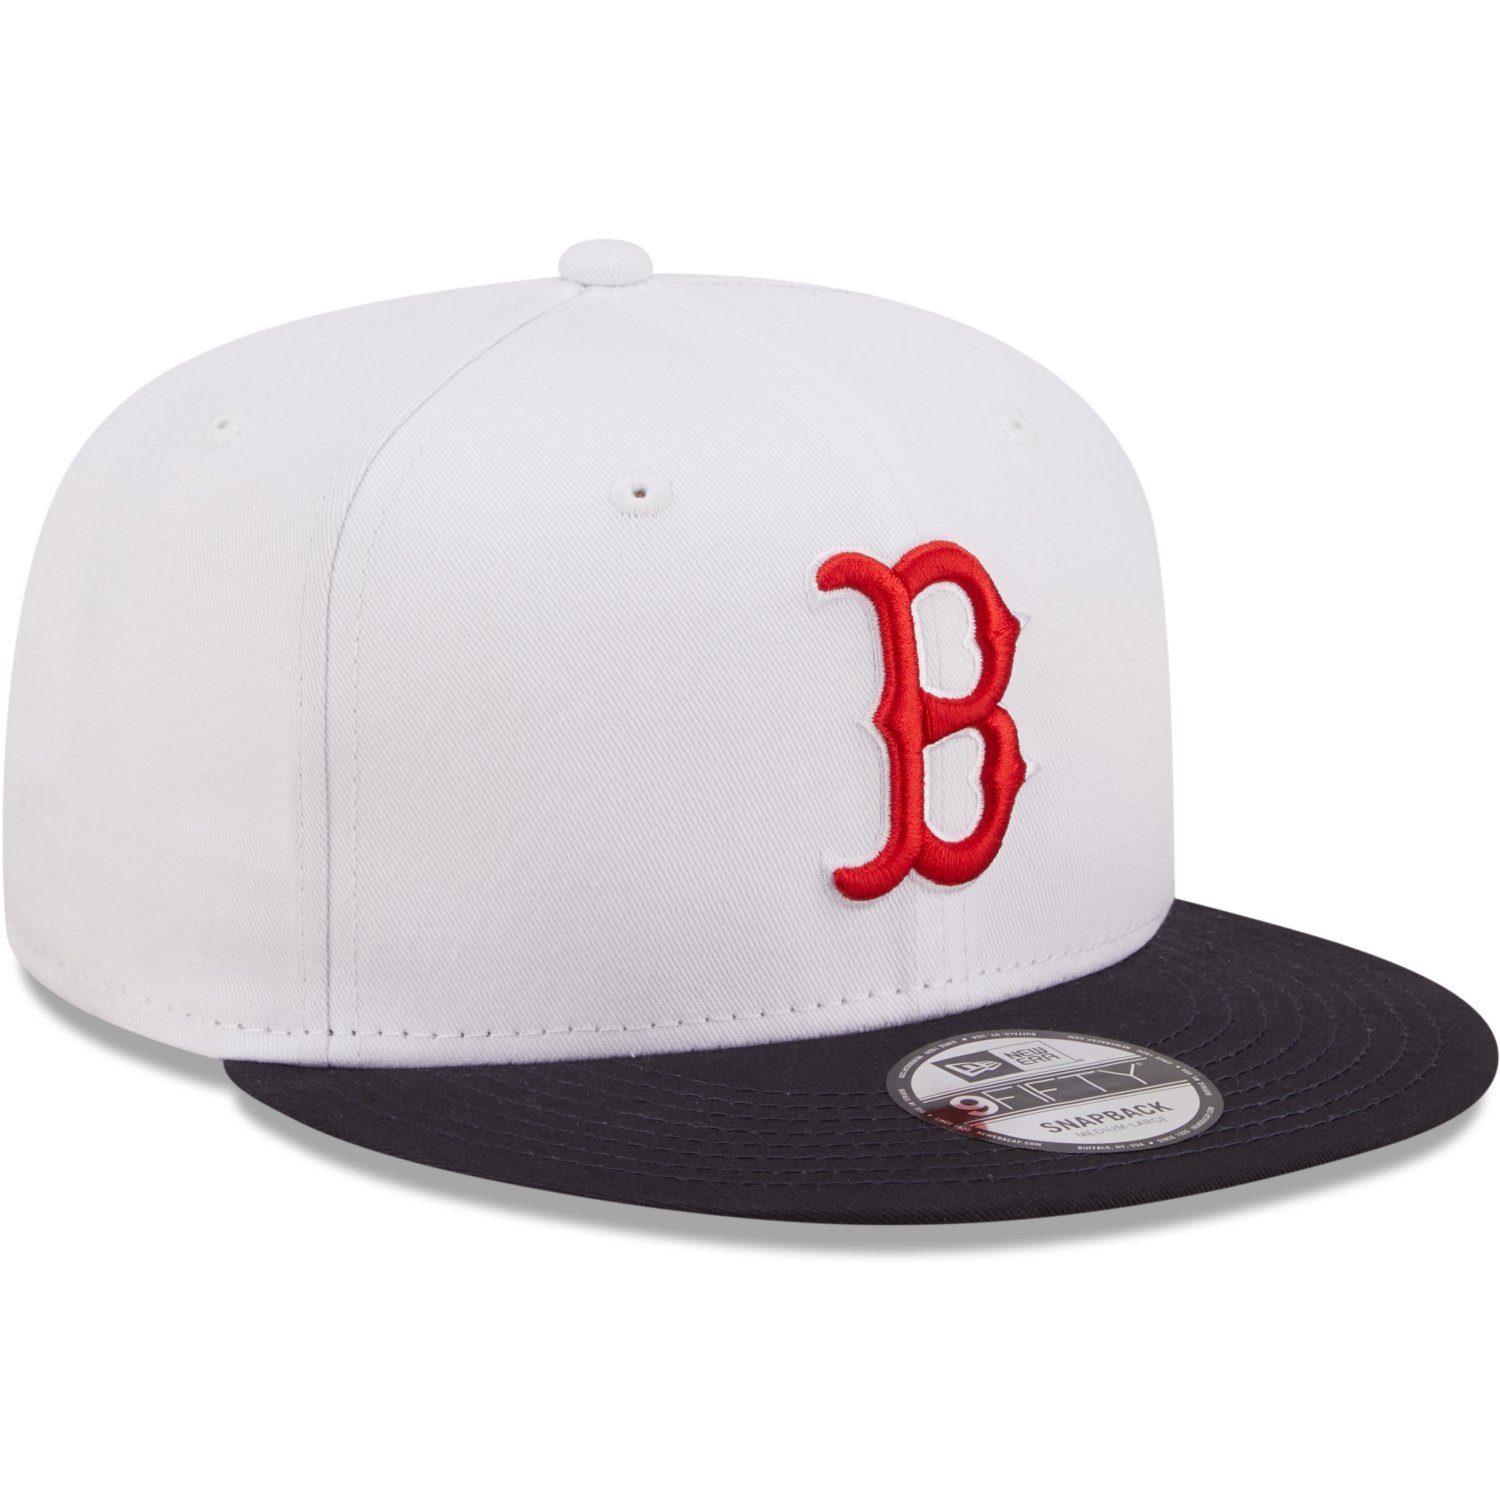 New Era Snapback Cap Boston 9Fifty Sox Red